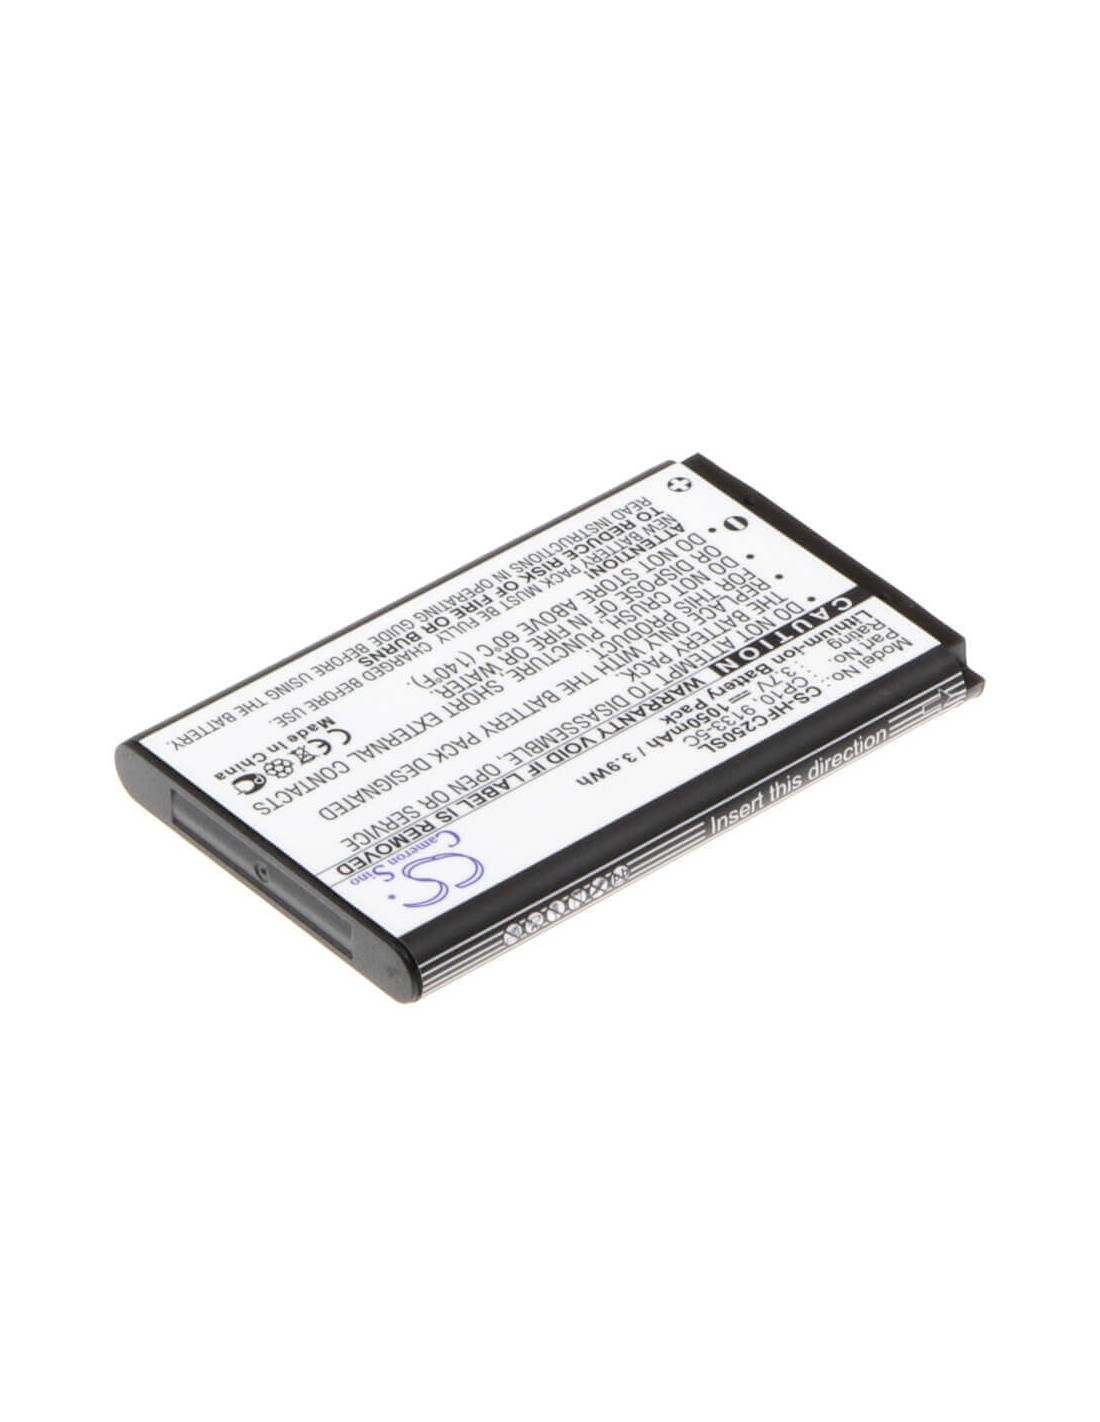 Battery for Amplicomms Powertel M4000, PowerTel M5000, Powertel M5010 3.7V, 1050mAh - 3.89Wh